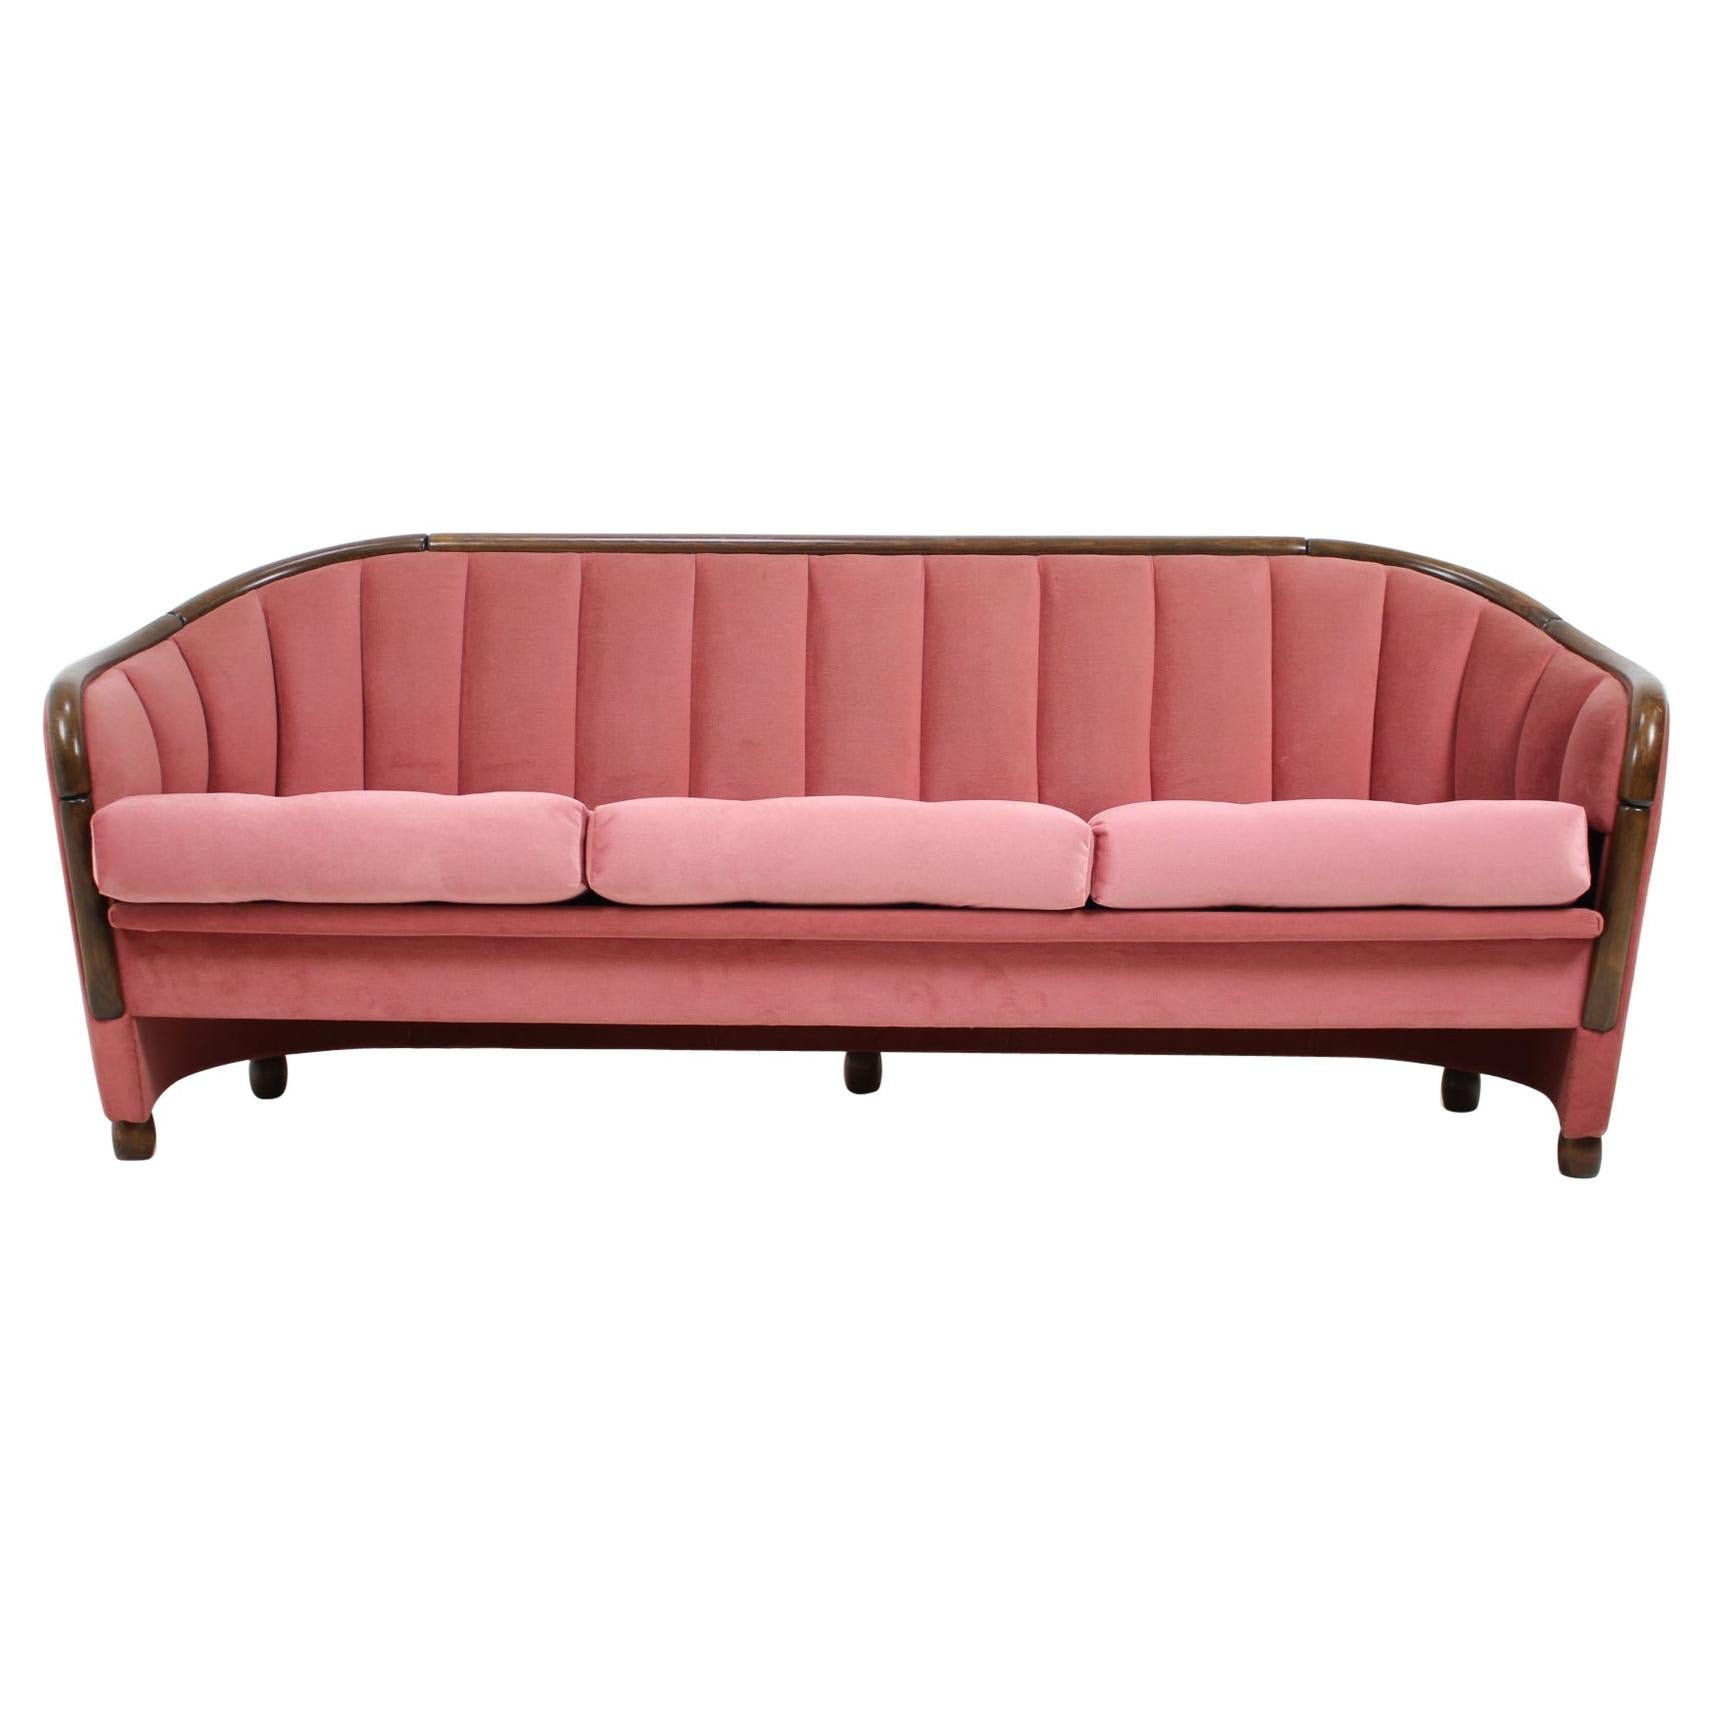 Italian 3-Seat Sofa in the Style of Gio Ponti, 1950s